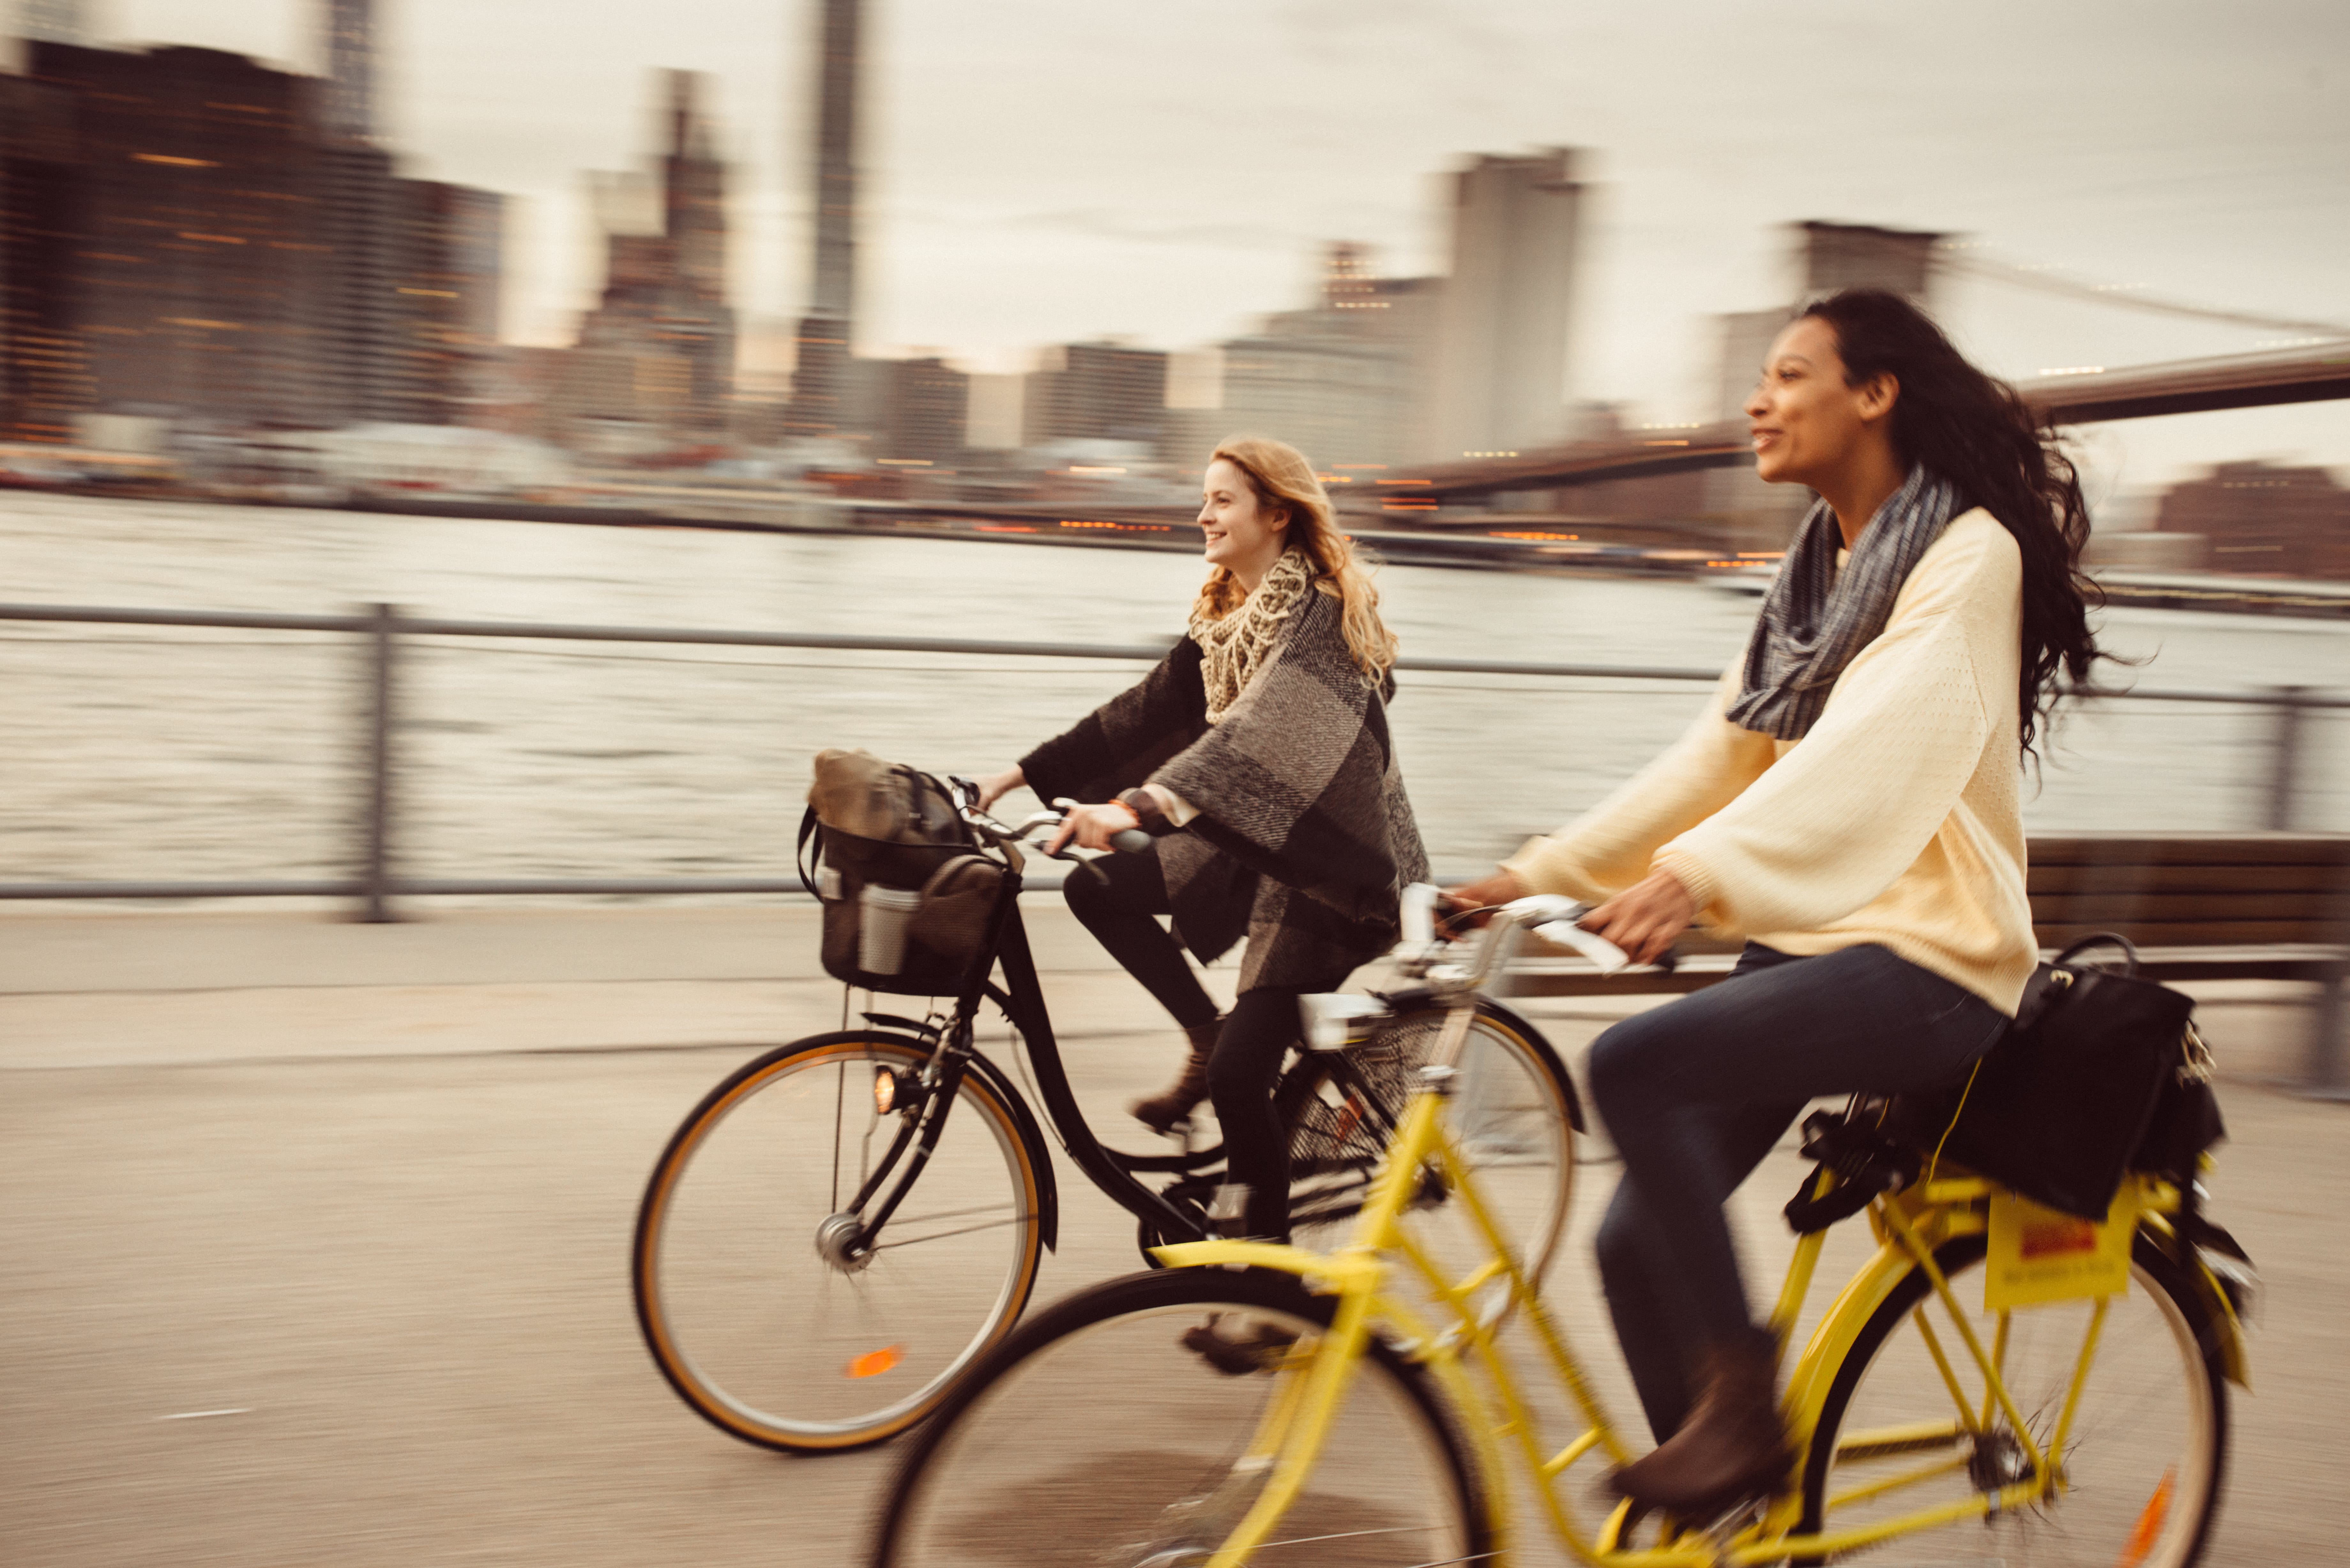 Two women riding their bikes